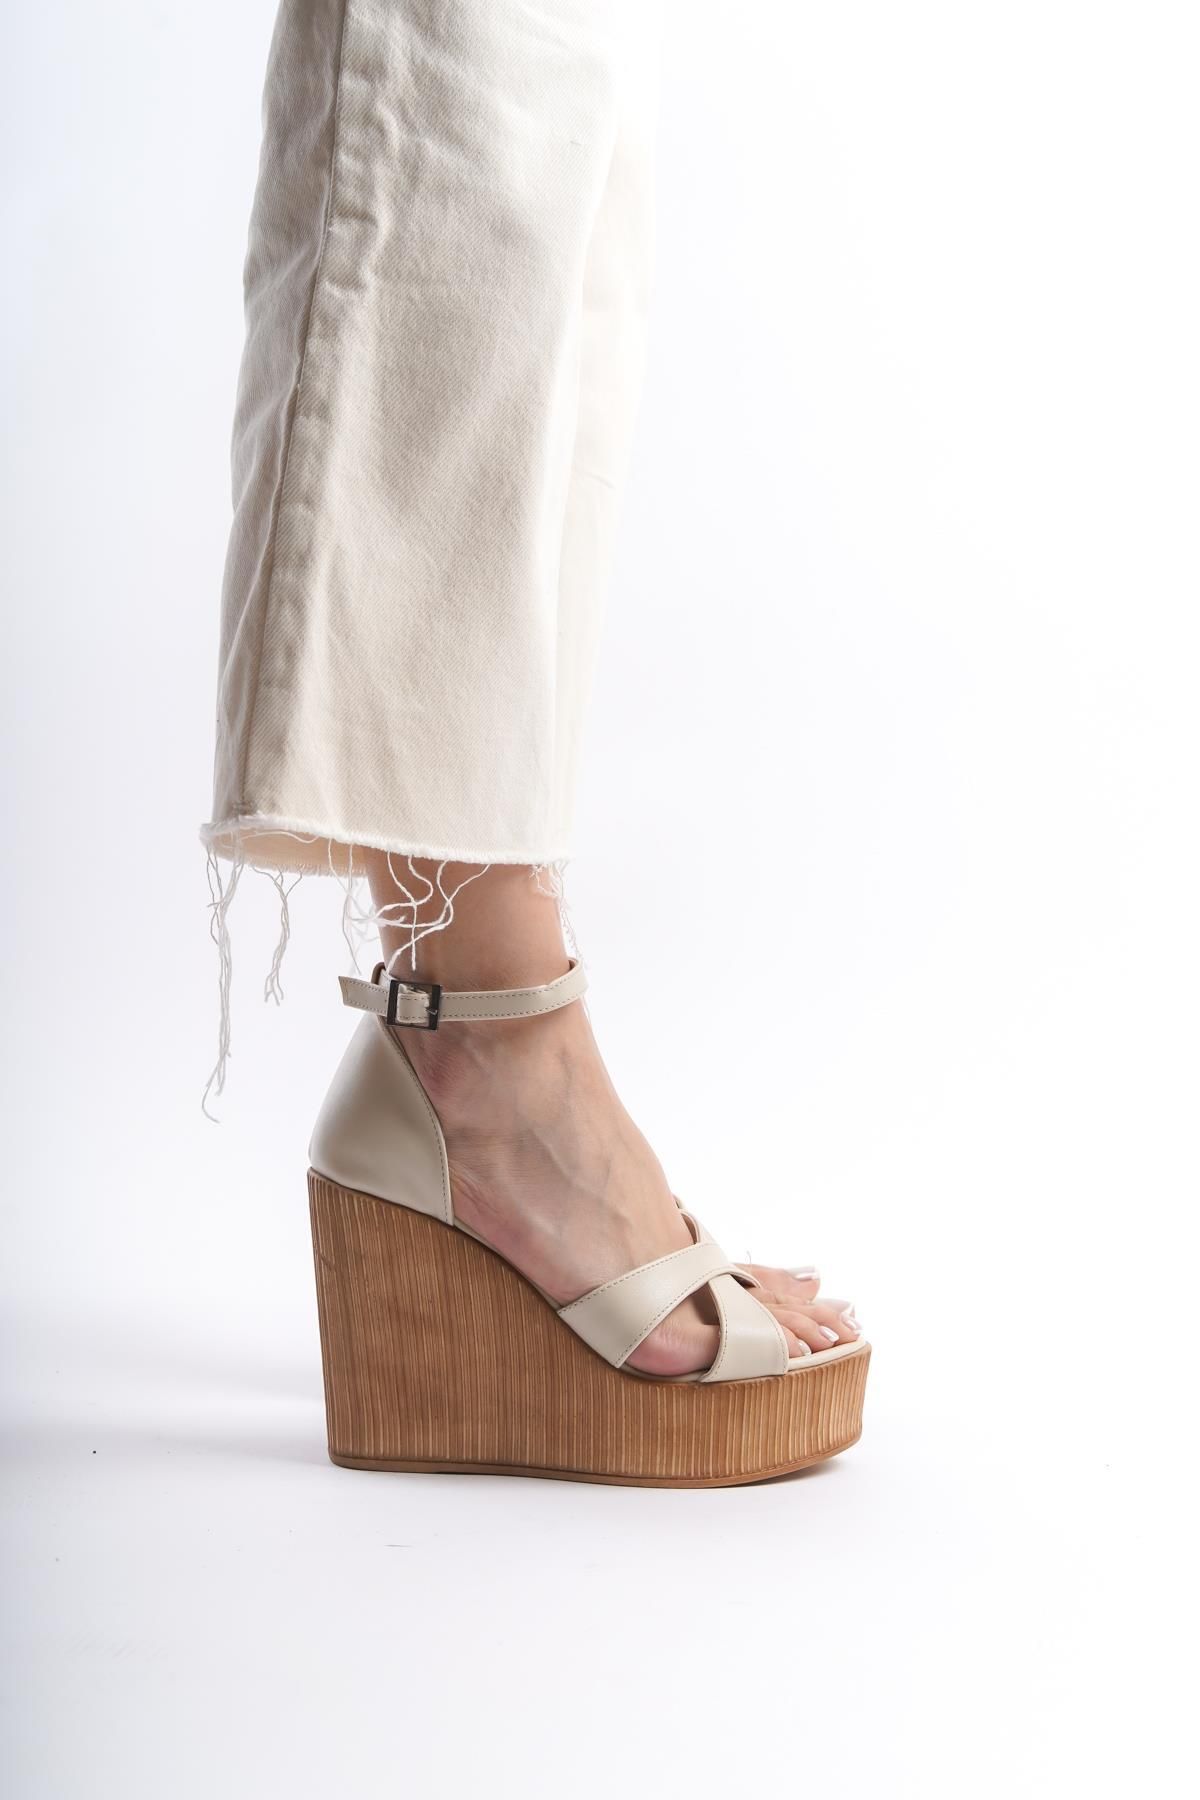 HVZ Exclusive Kadın Dolgu Topuklu Ayakkabı Rahat Yüksek Topuklu (11cm)